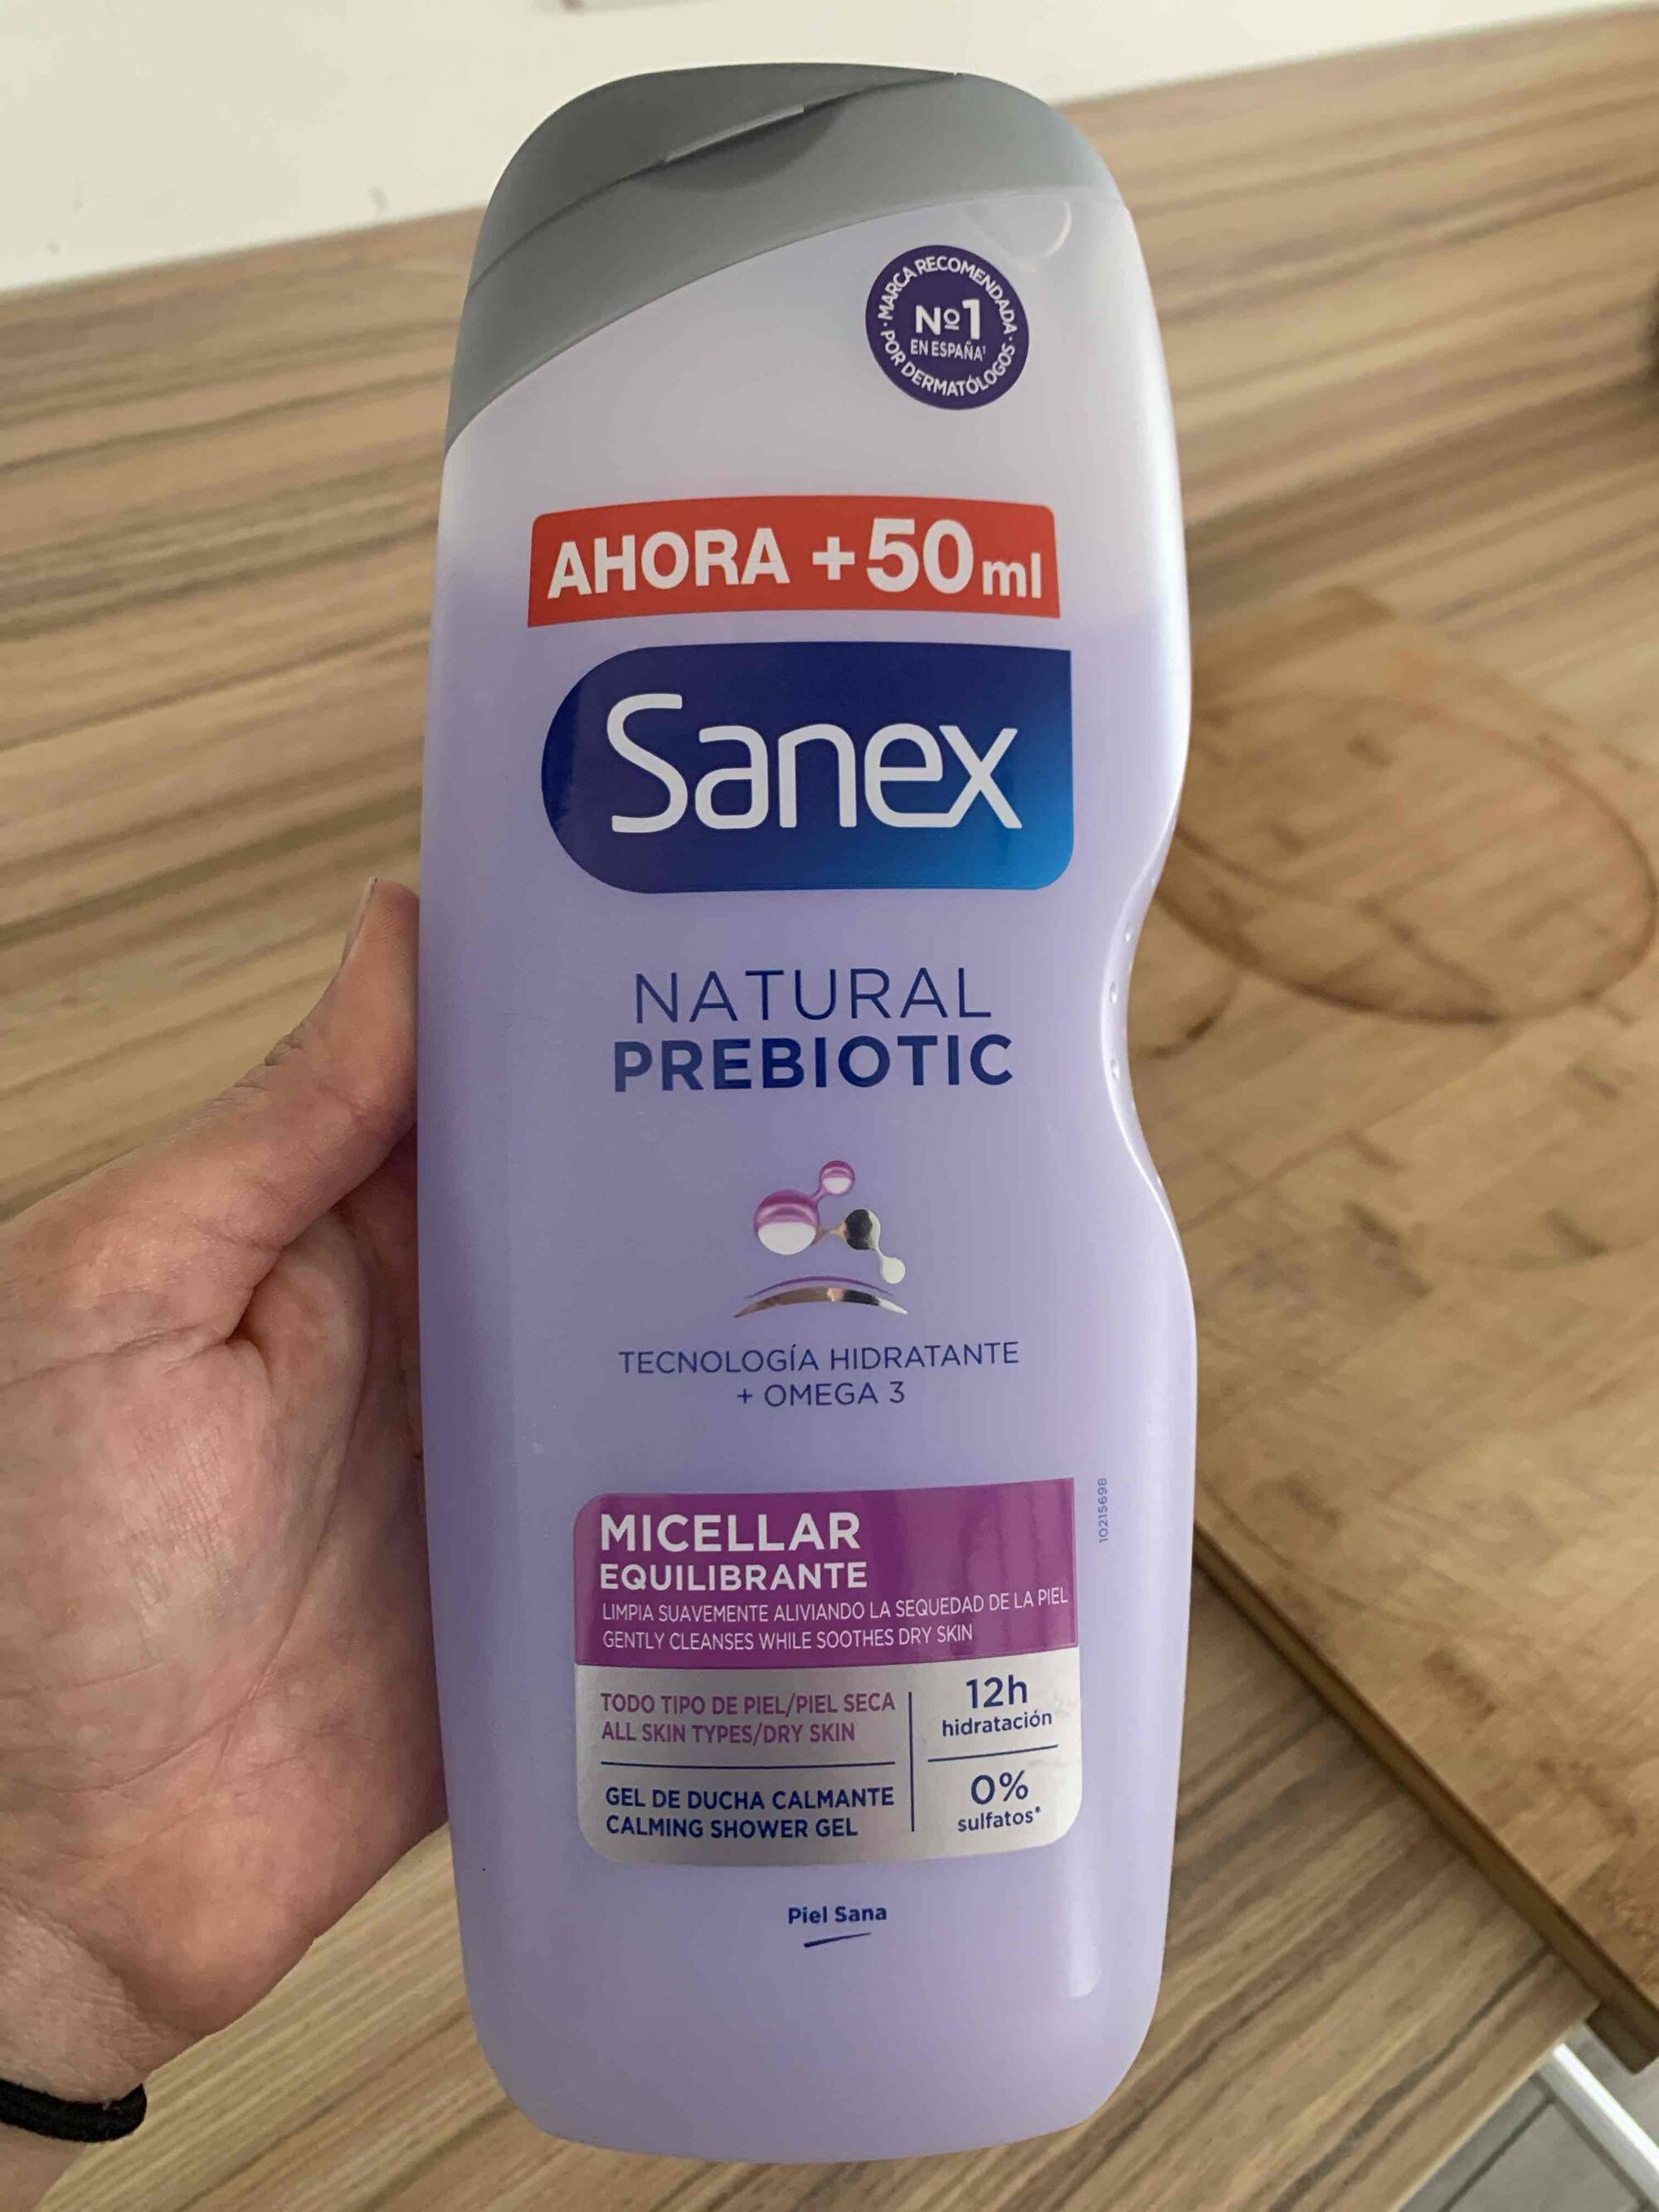 SANEX - Natural prebiotic - Micellar equilibrante gel de ducha calmante